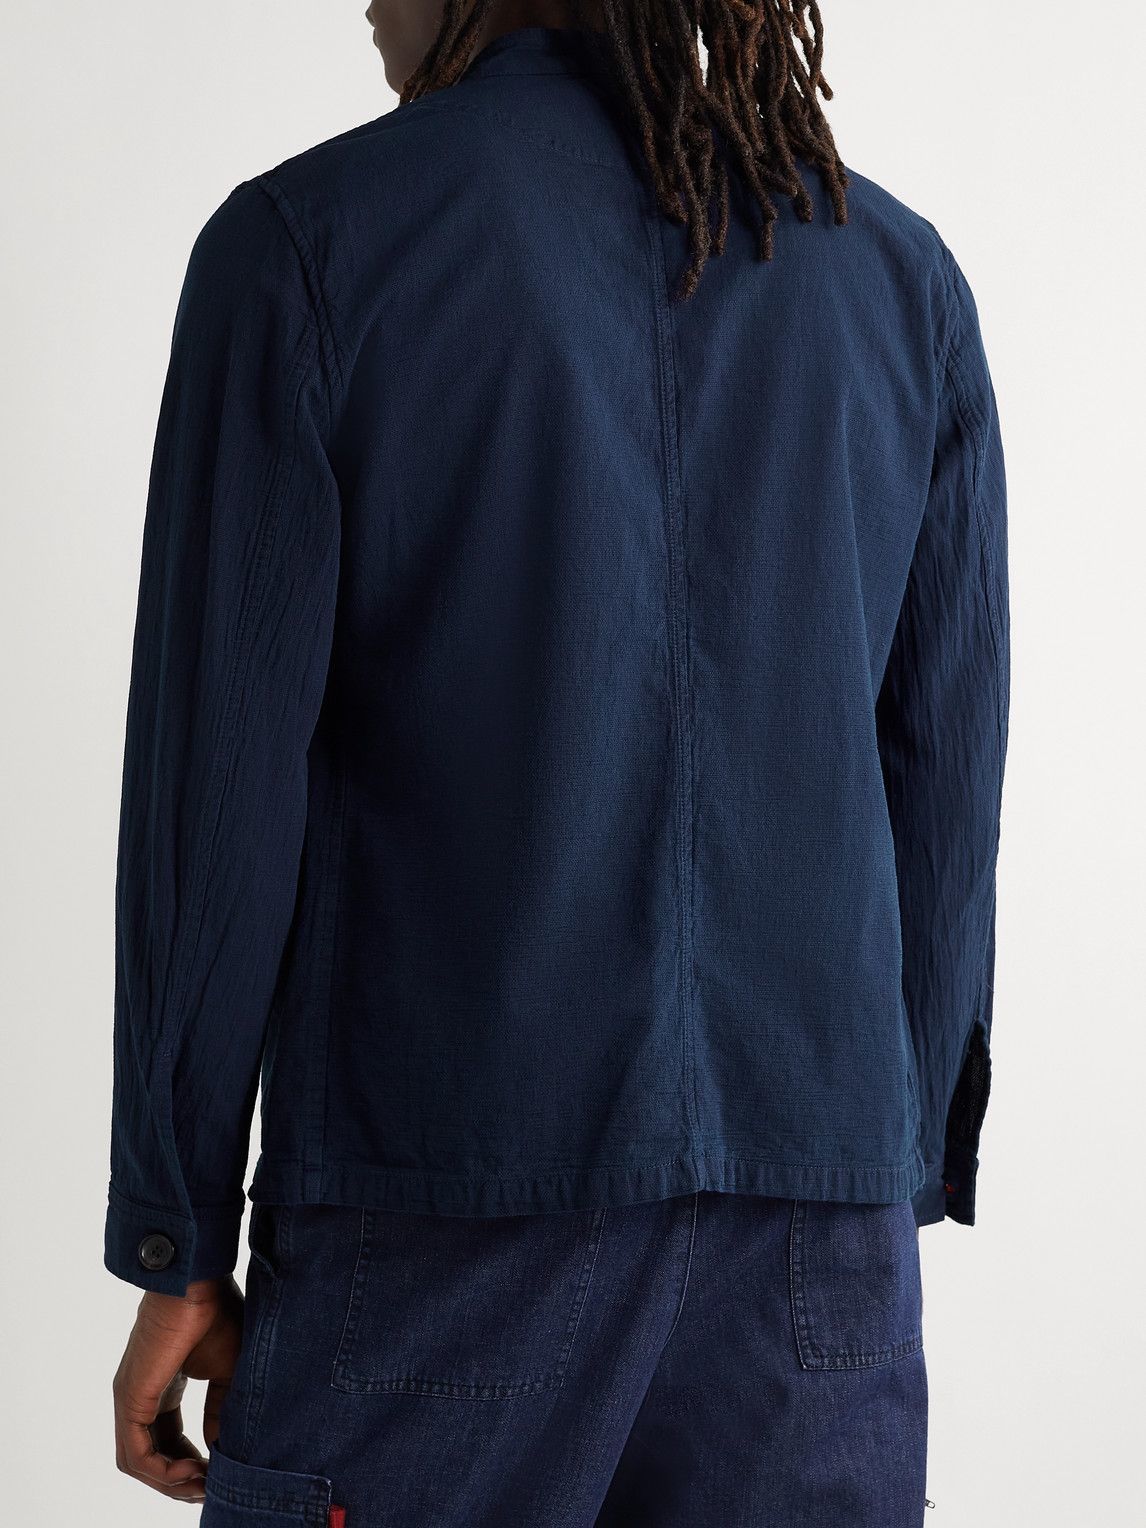 Oliver Spencer - Coram Unstructured Nehru-Collar Indigo-Dyed Cotton Jacket - Blue